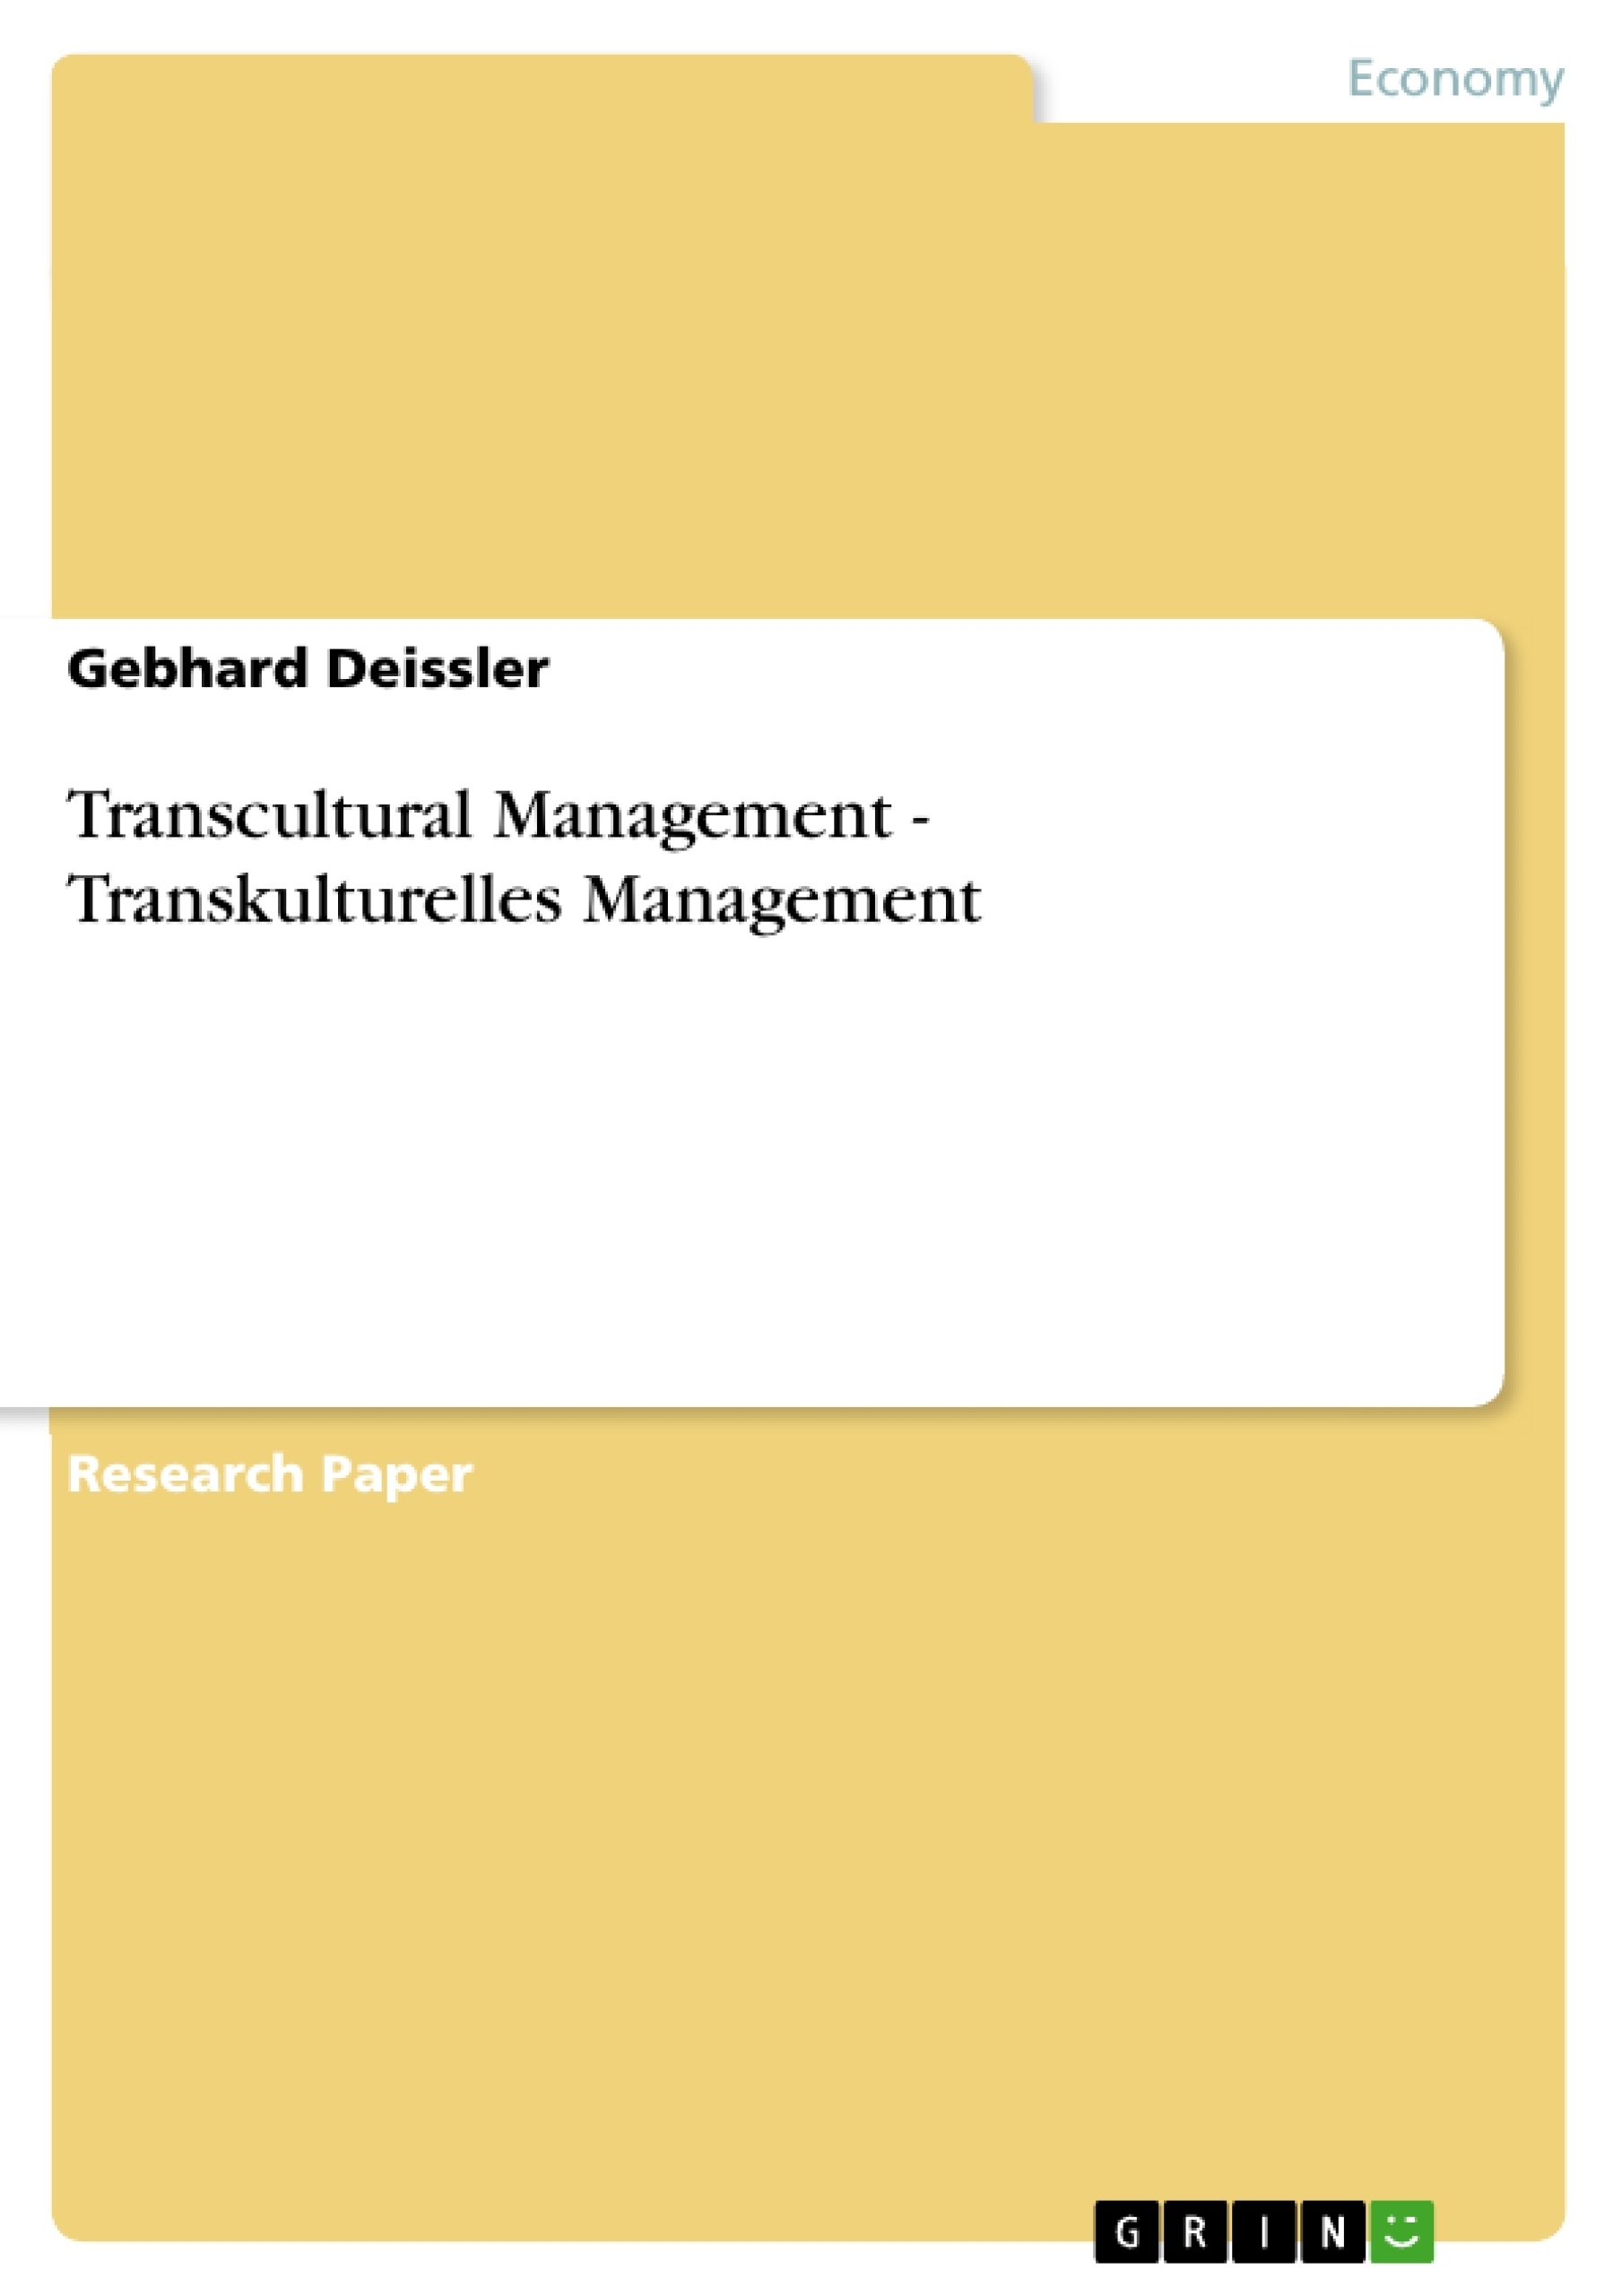 Title: Transcultural Management - Transkulturelles Management